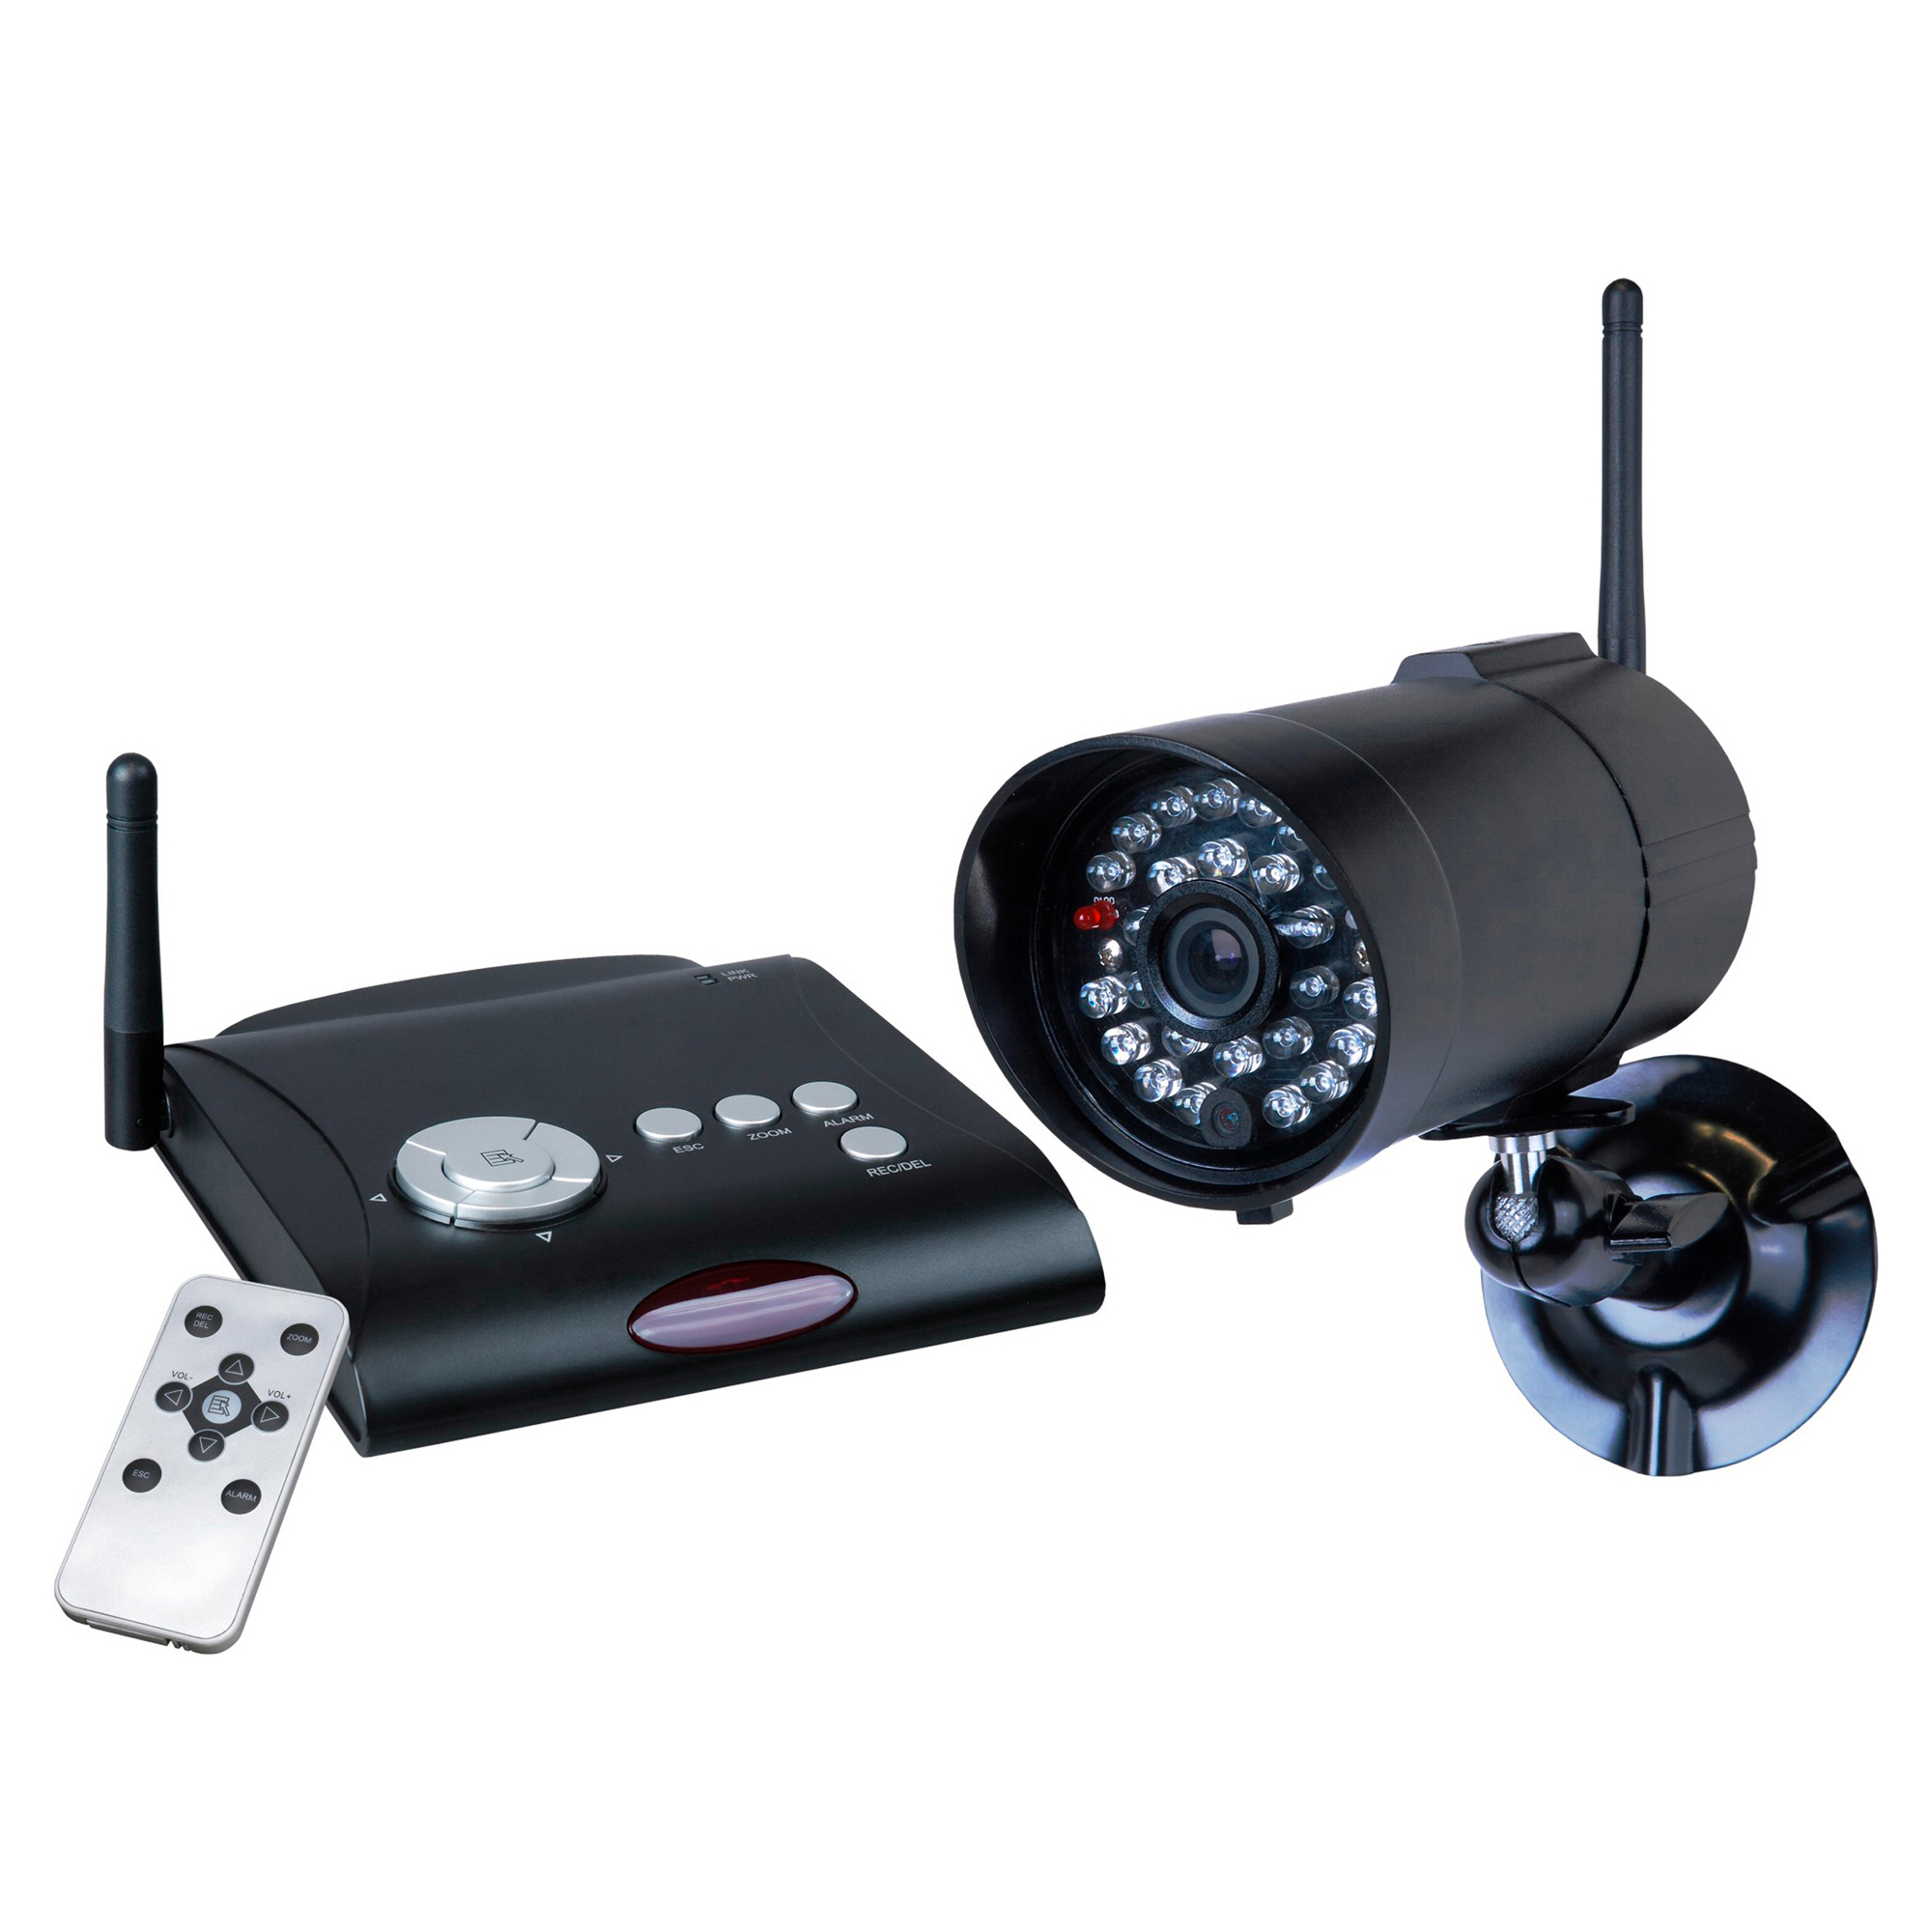 Überwachungskamera-Set 'C961DVR' + product picture